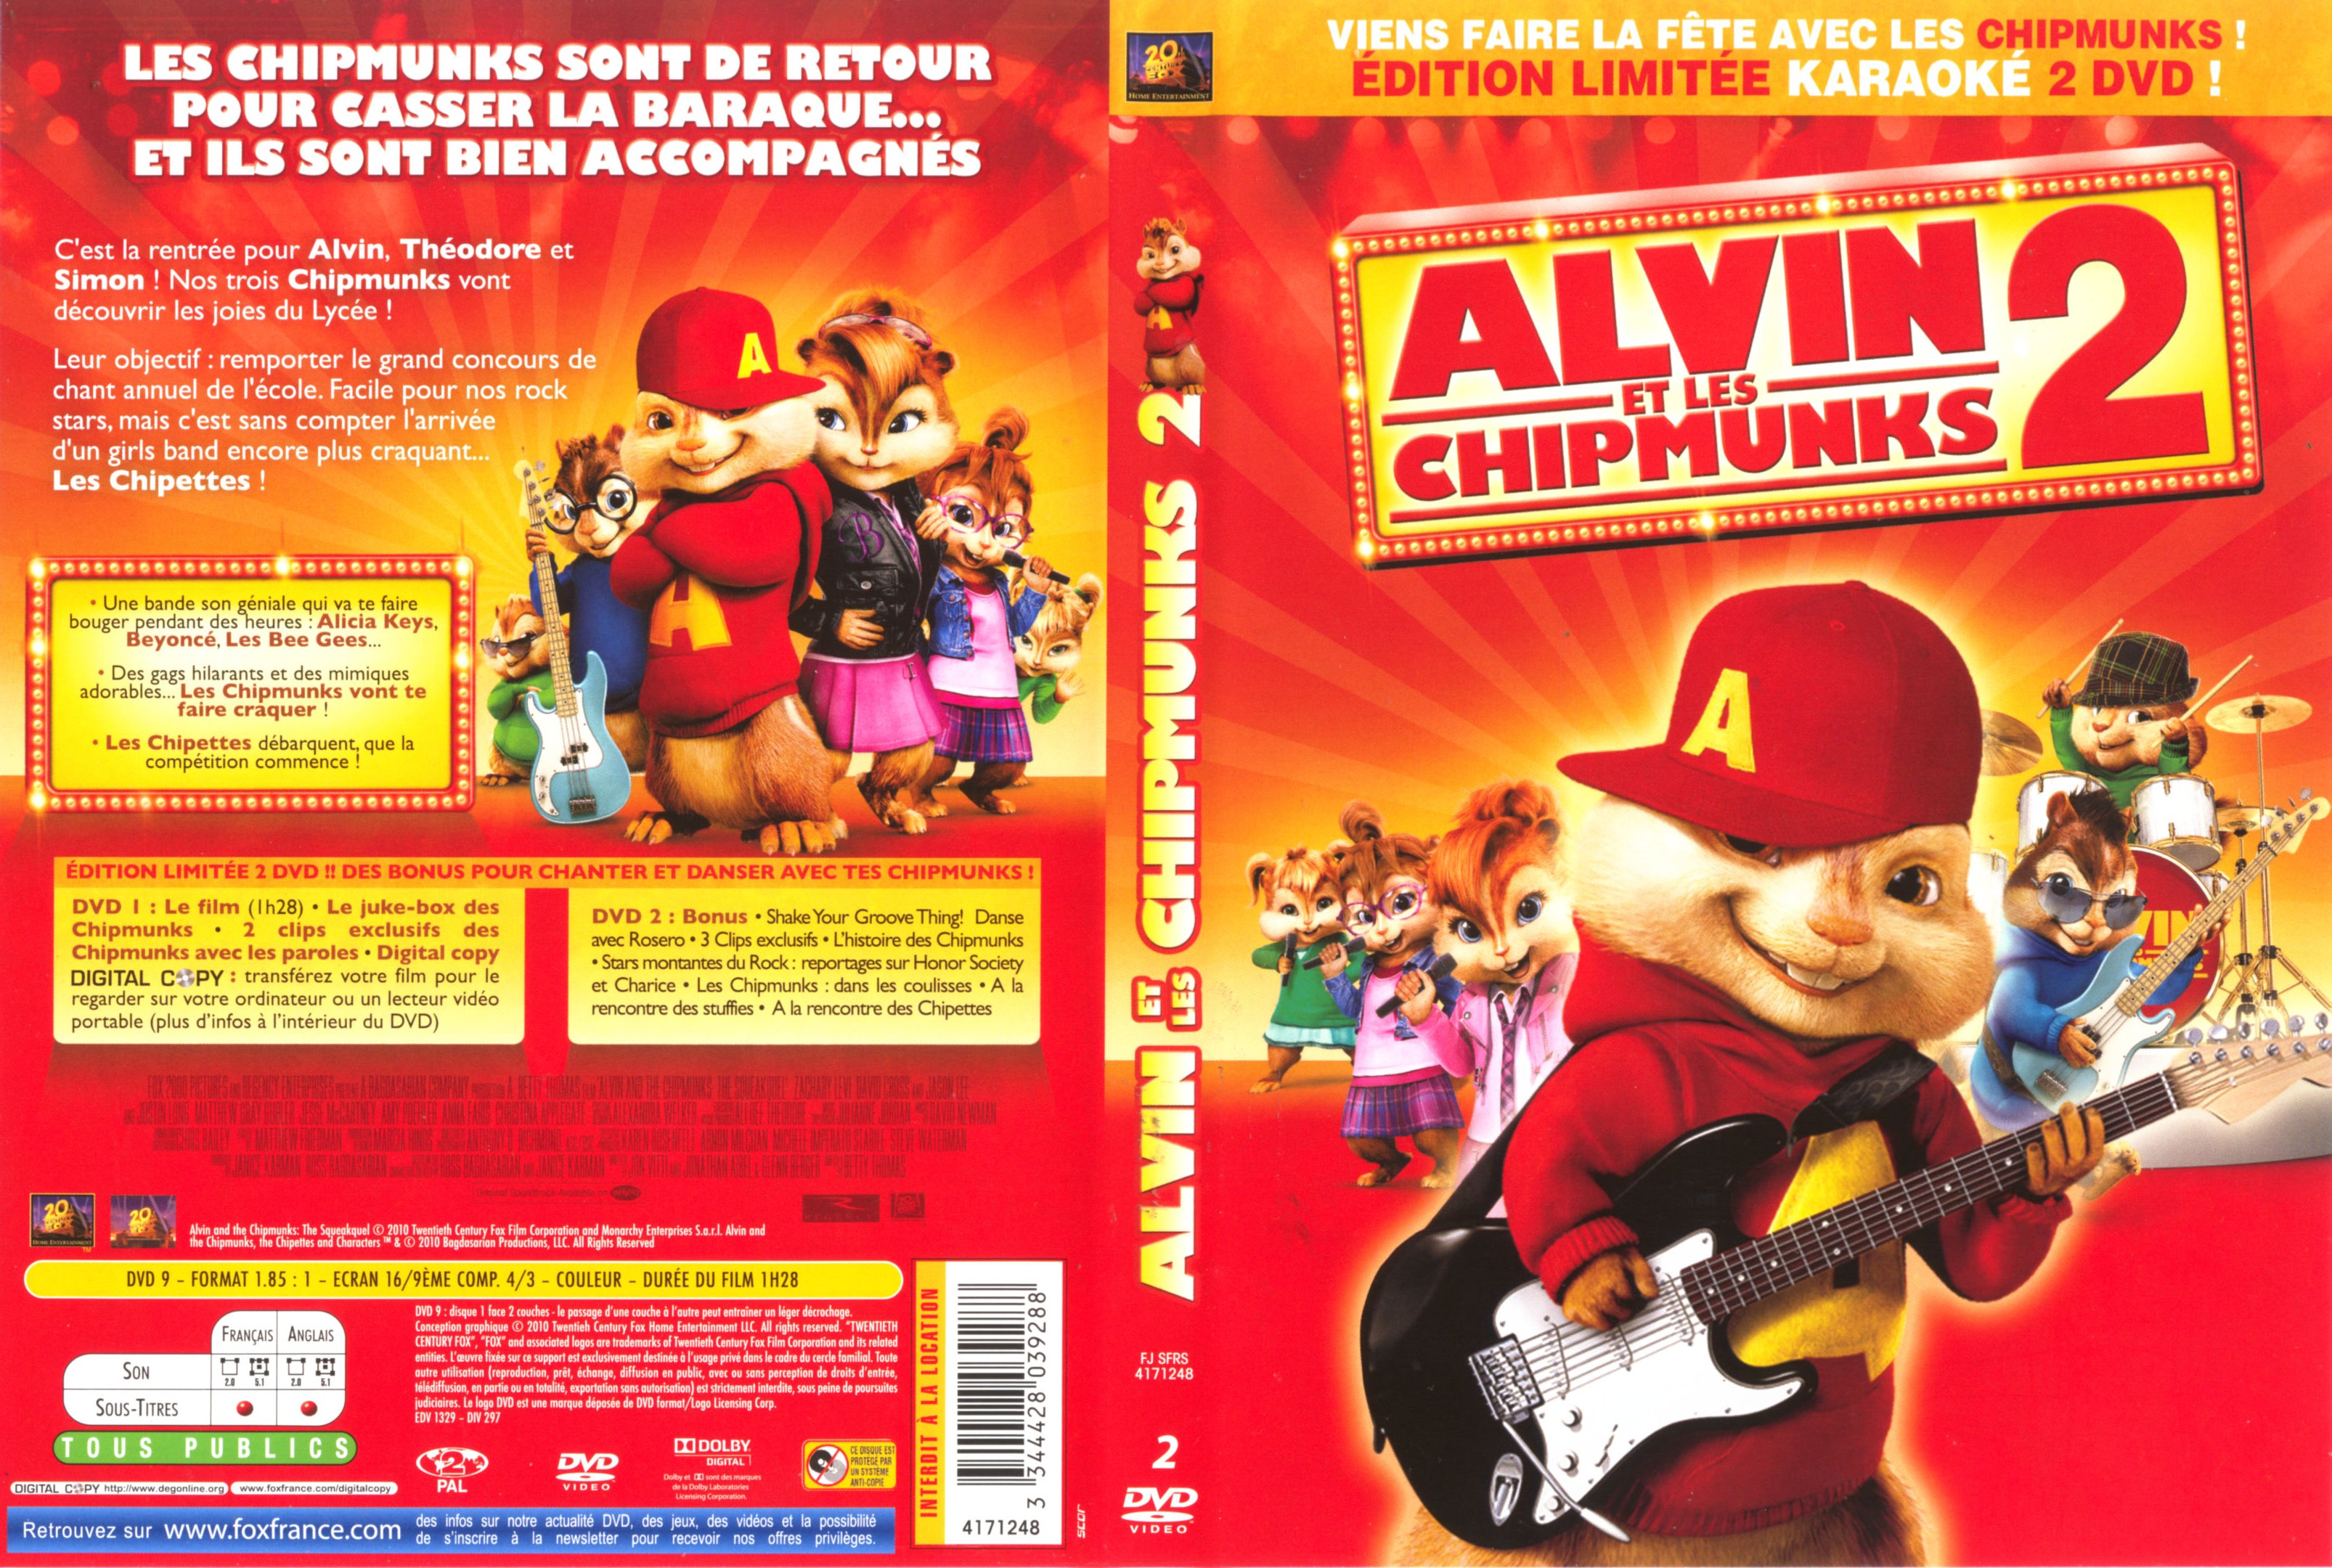 Jaquette DVD Alvin et les Chipmunks 2 v2